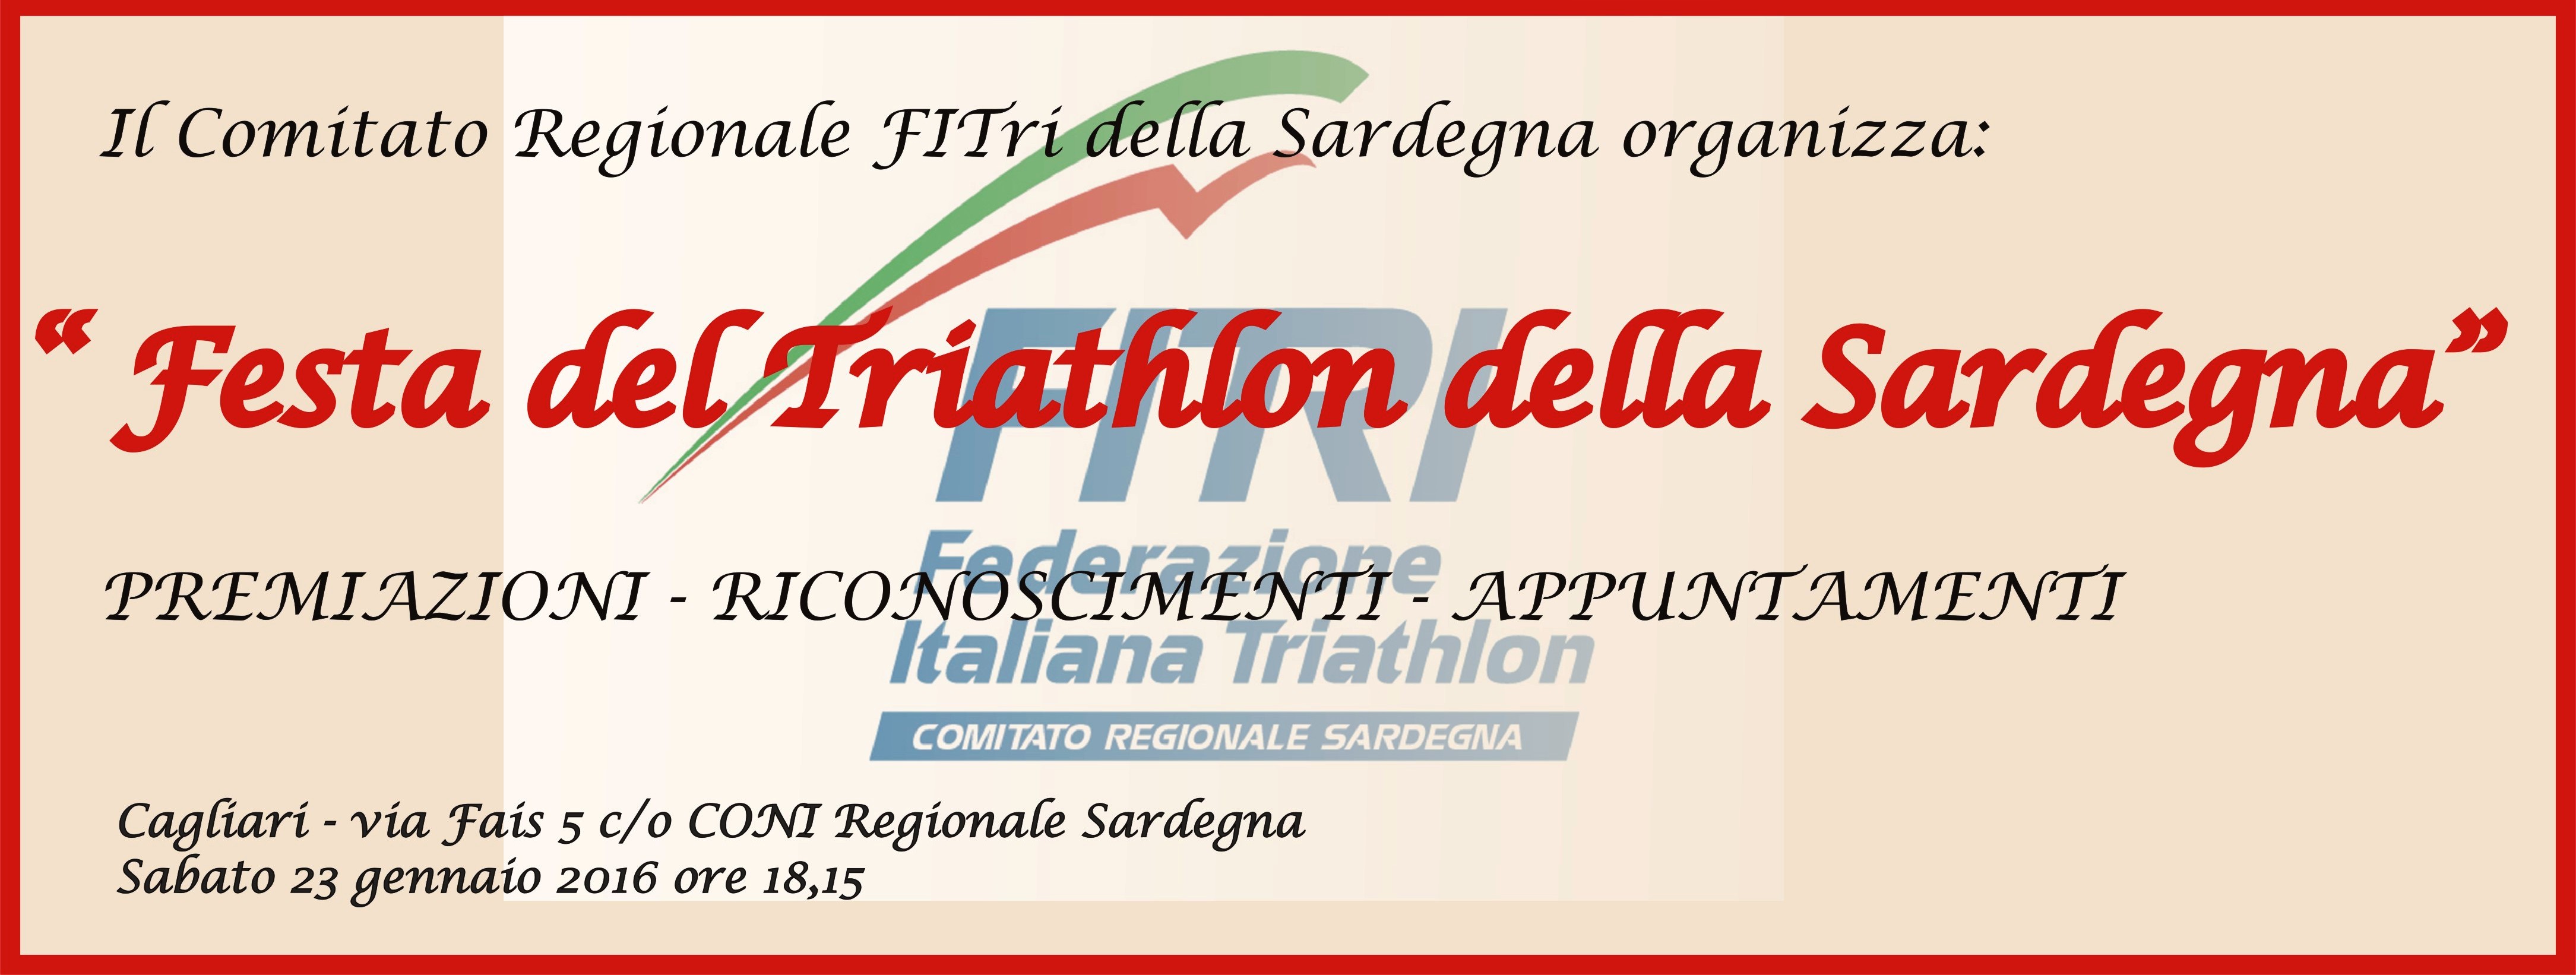 Festa del triathlon della Sardegna: i premiati